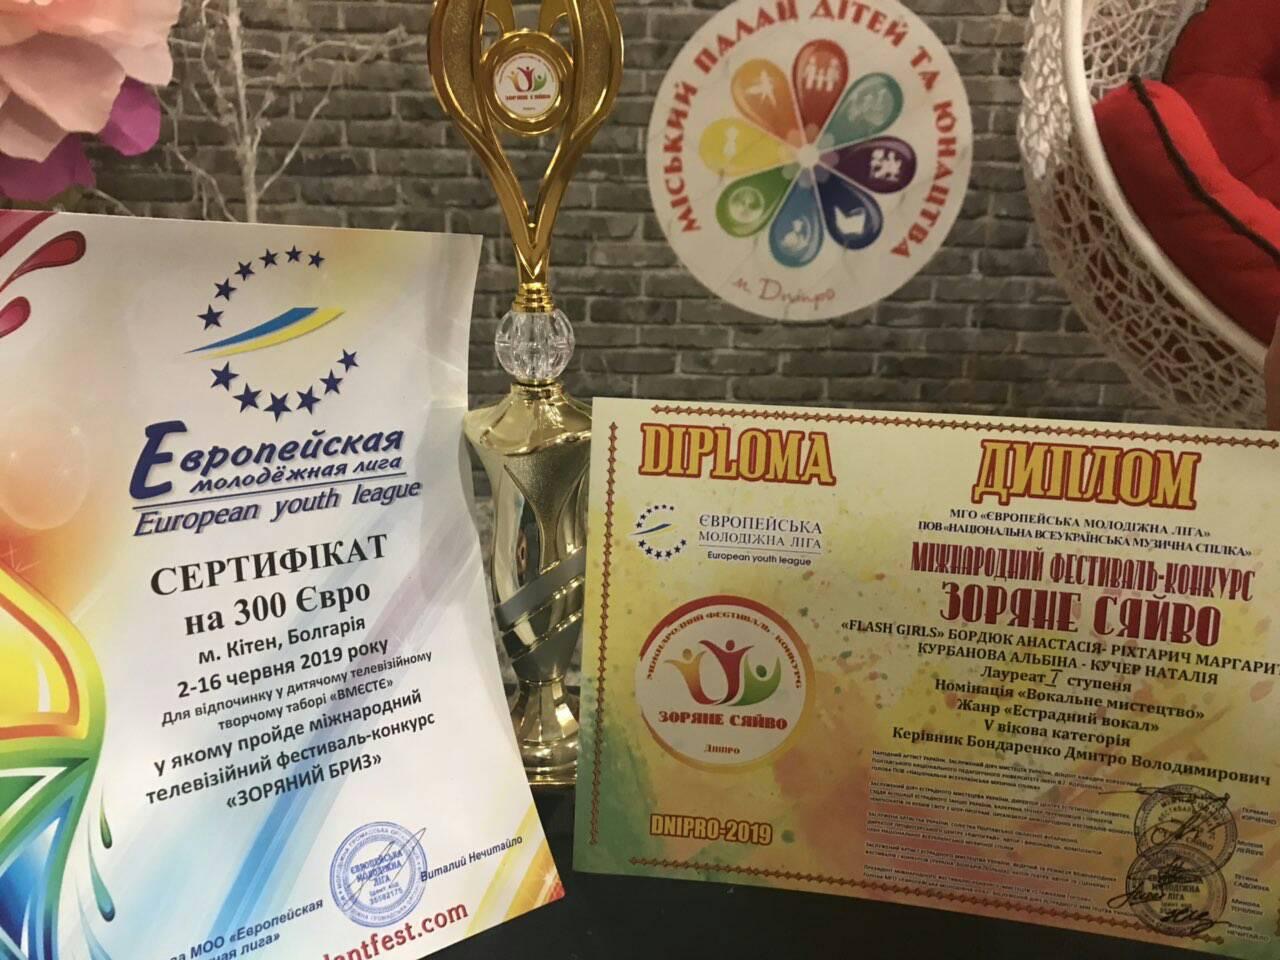 Диплом и сертификат фестиваля-конкурса «Зоряне сяйво»